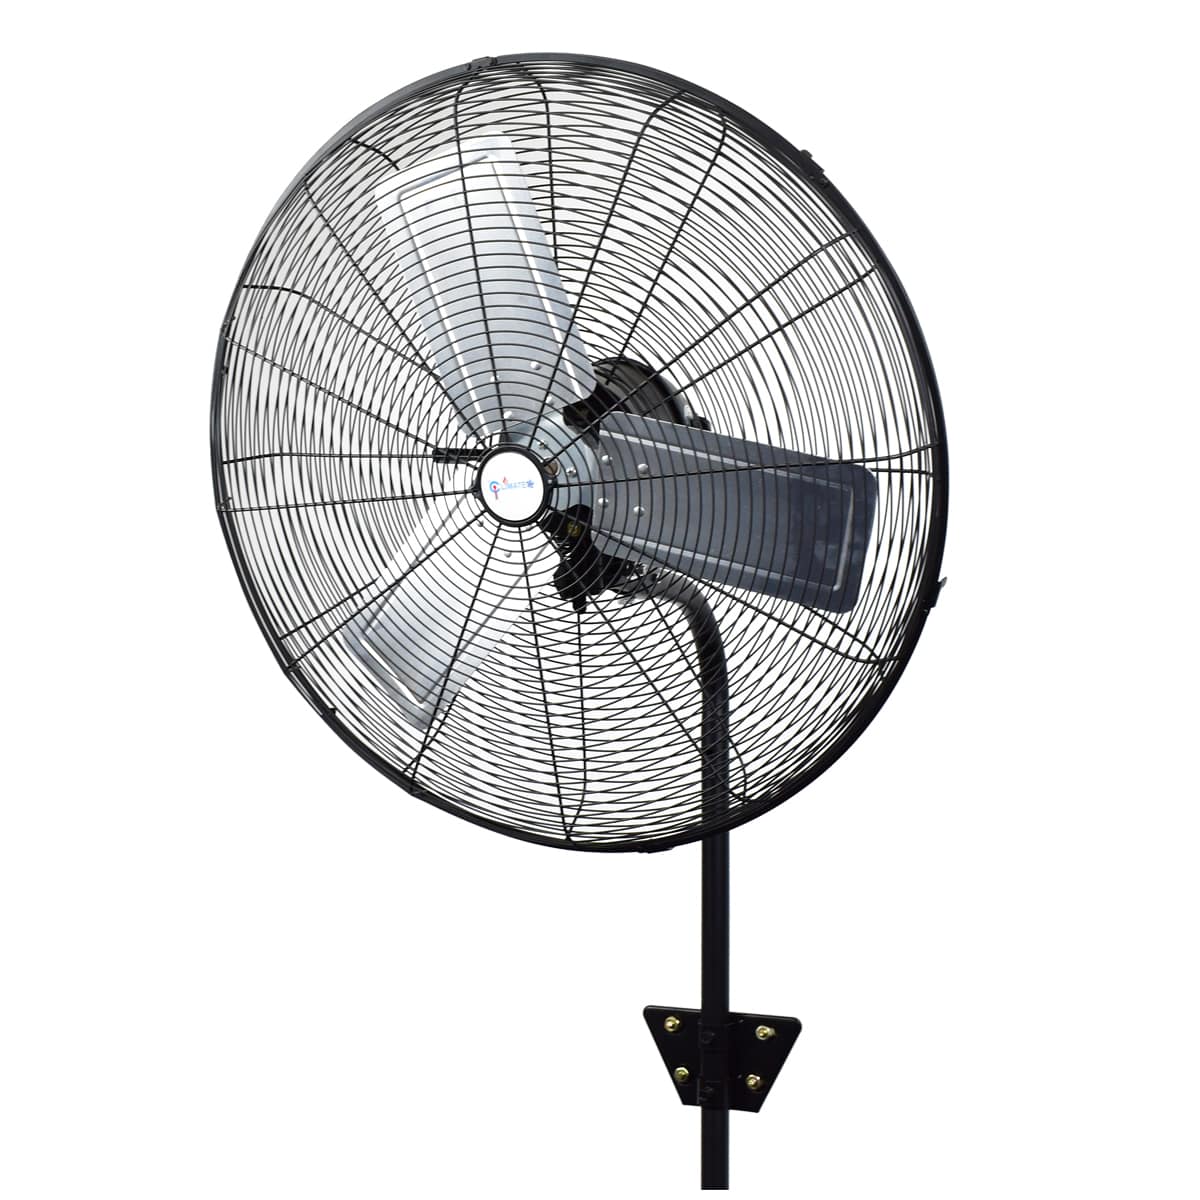 American shape 26” outdoor wall fan